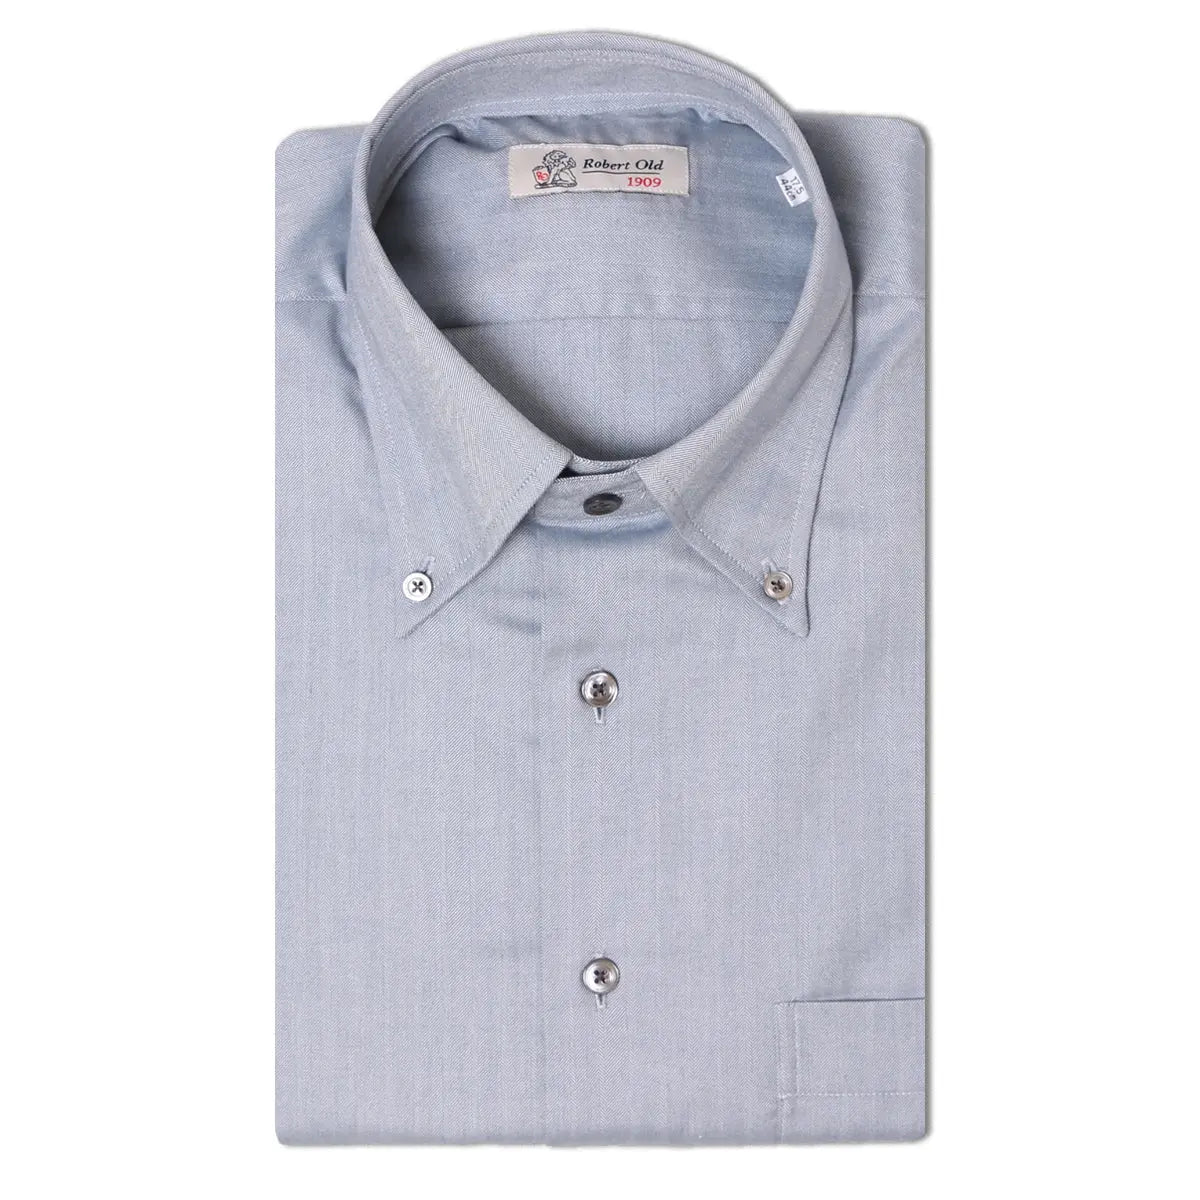 Silver Blue Long Sleeve Cotton Shirt  Robert Old   